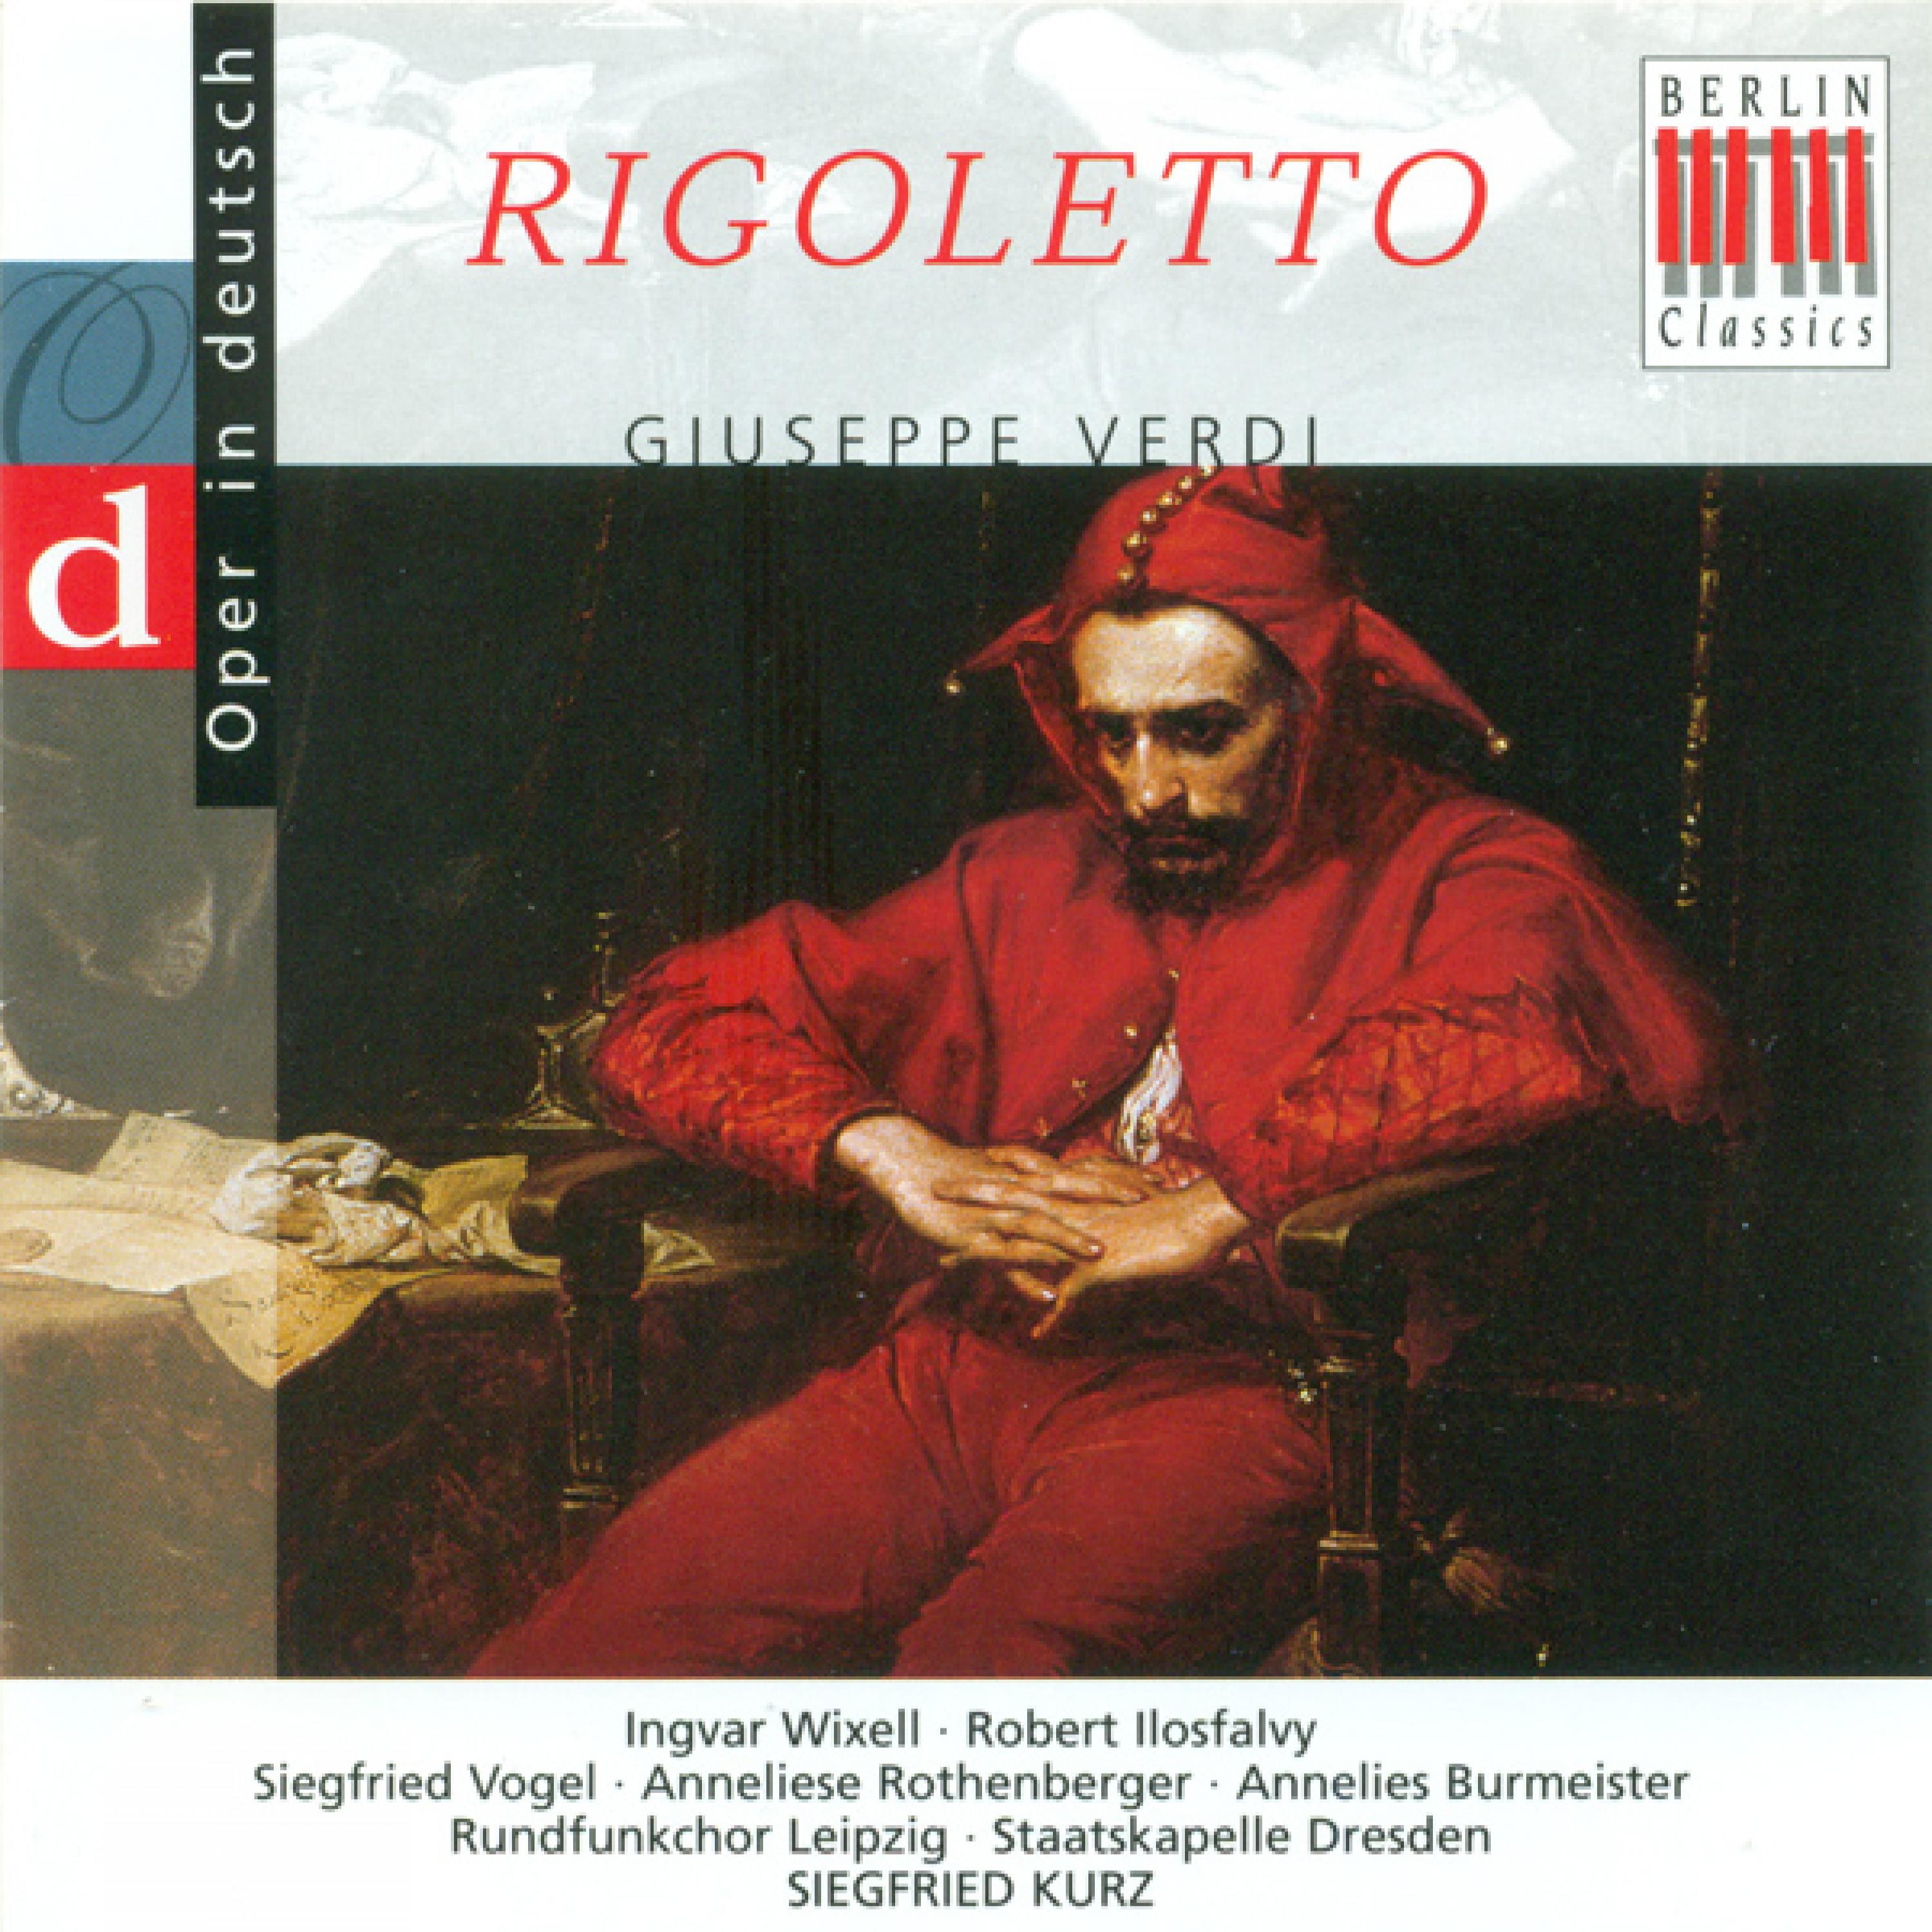 Rigoletto, Act II: "Mein Vater! - Gott meine Tochter"